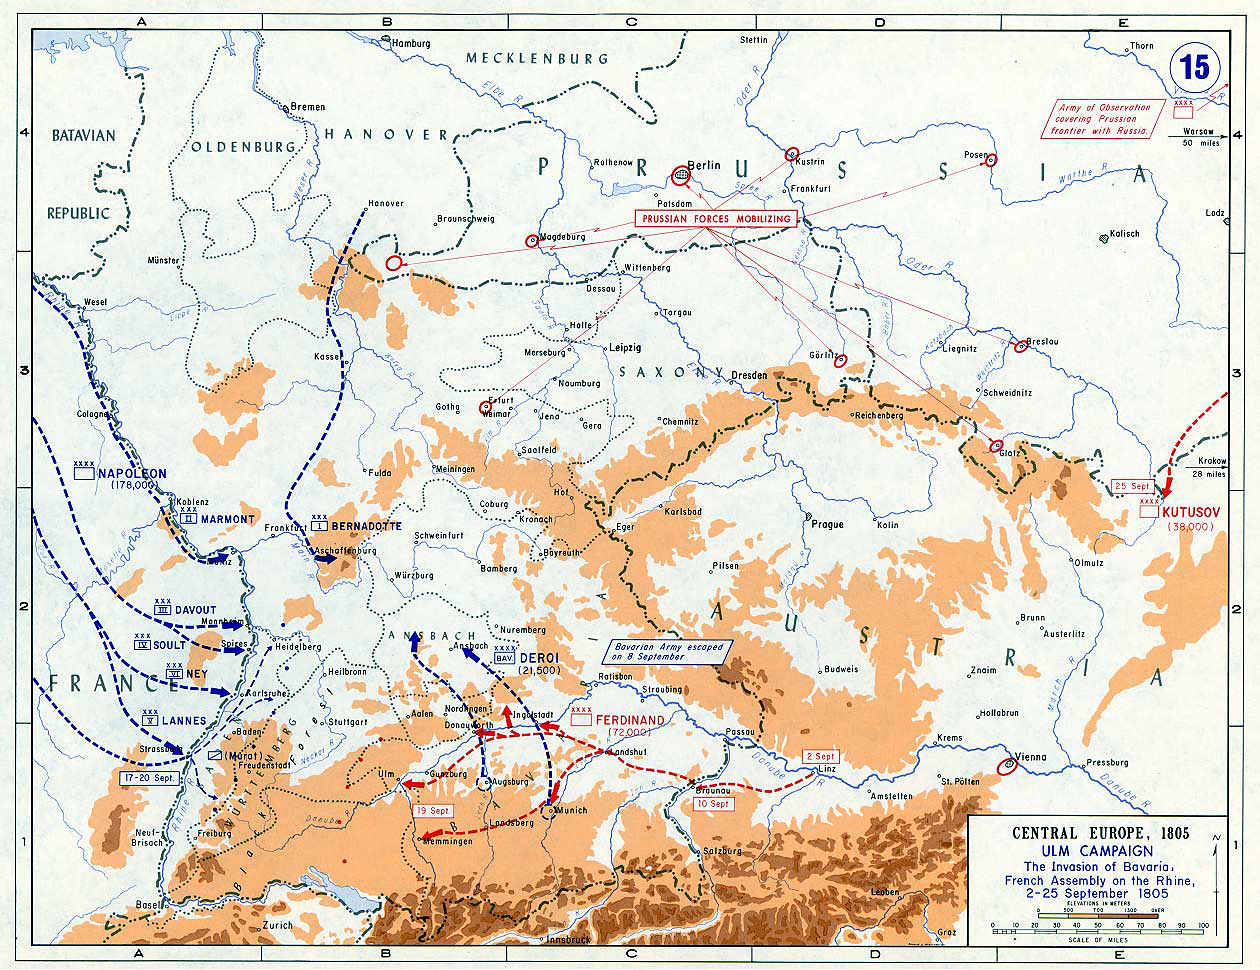 Ульмская кампания - вторжение в Баварию и французское собрание на Рейне, 2-25 сентября 1805 г., карта